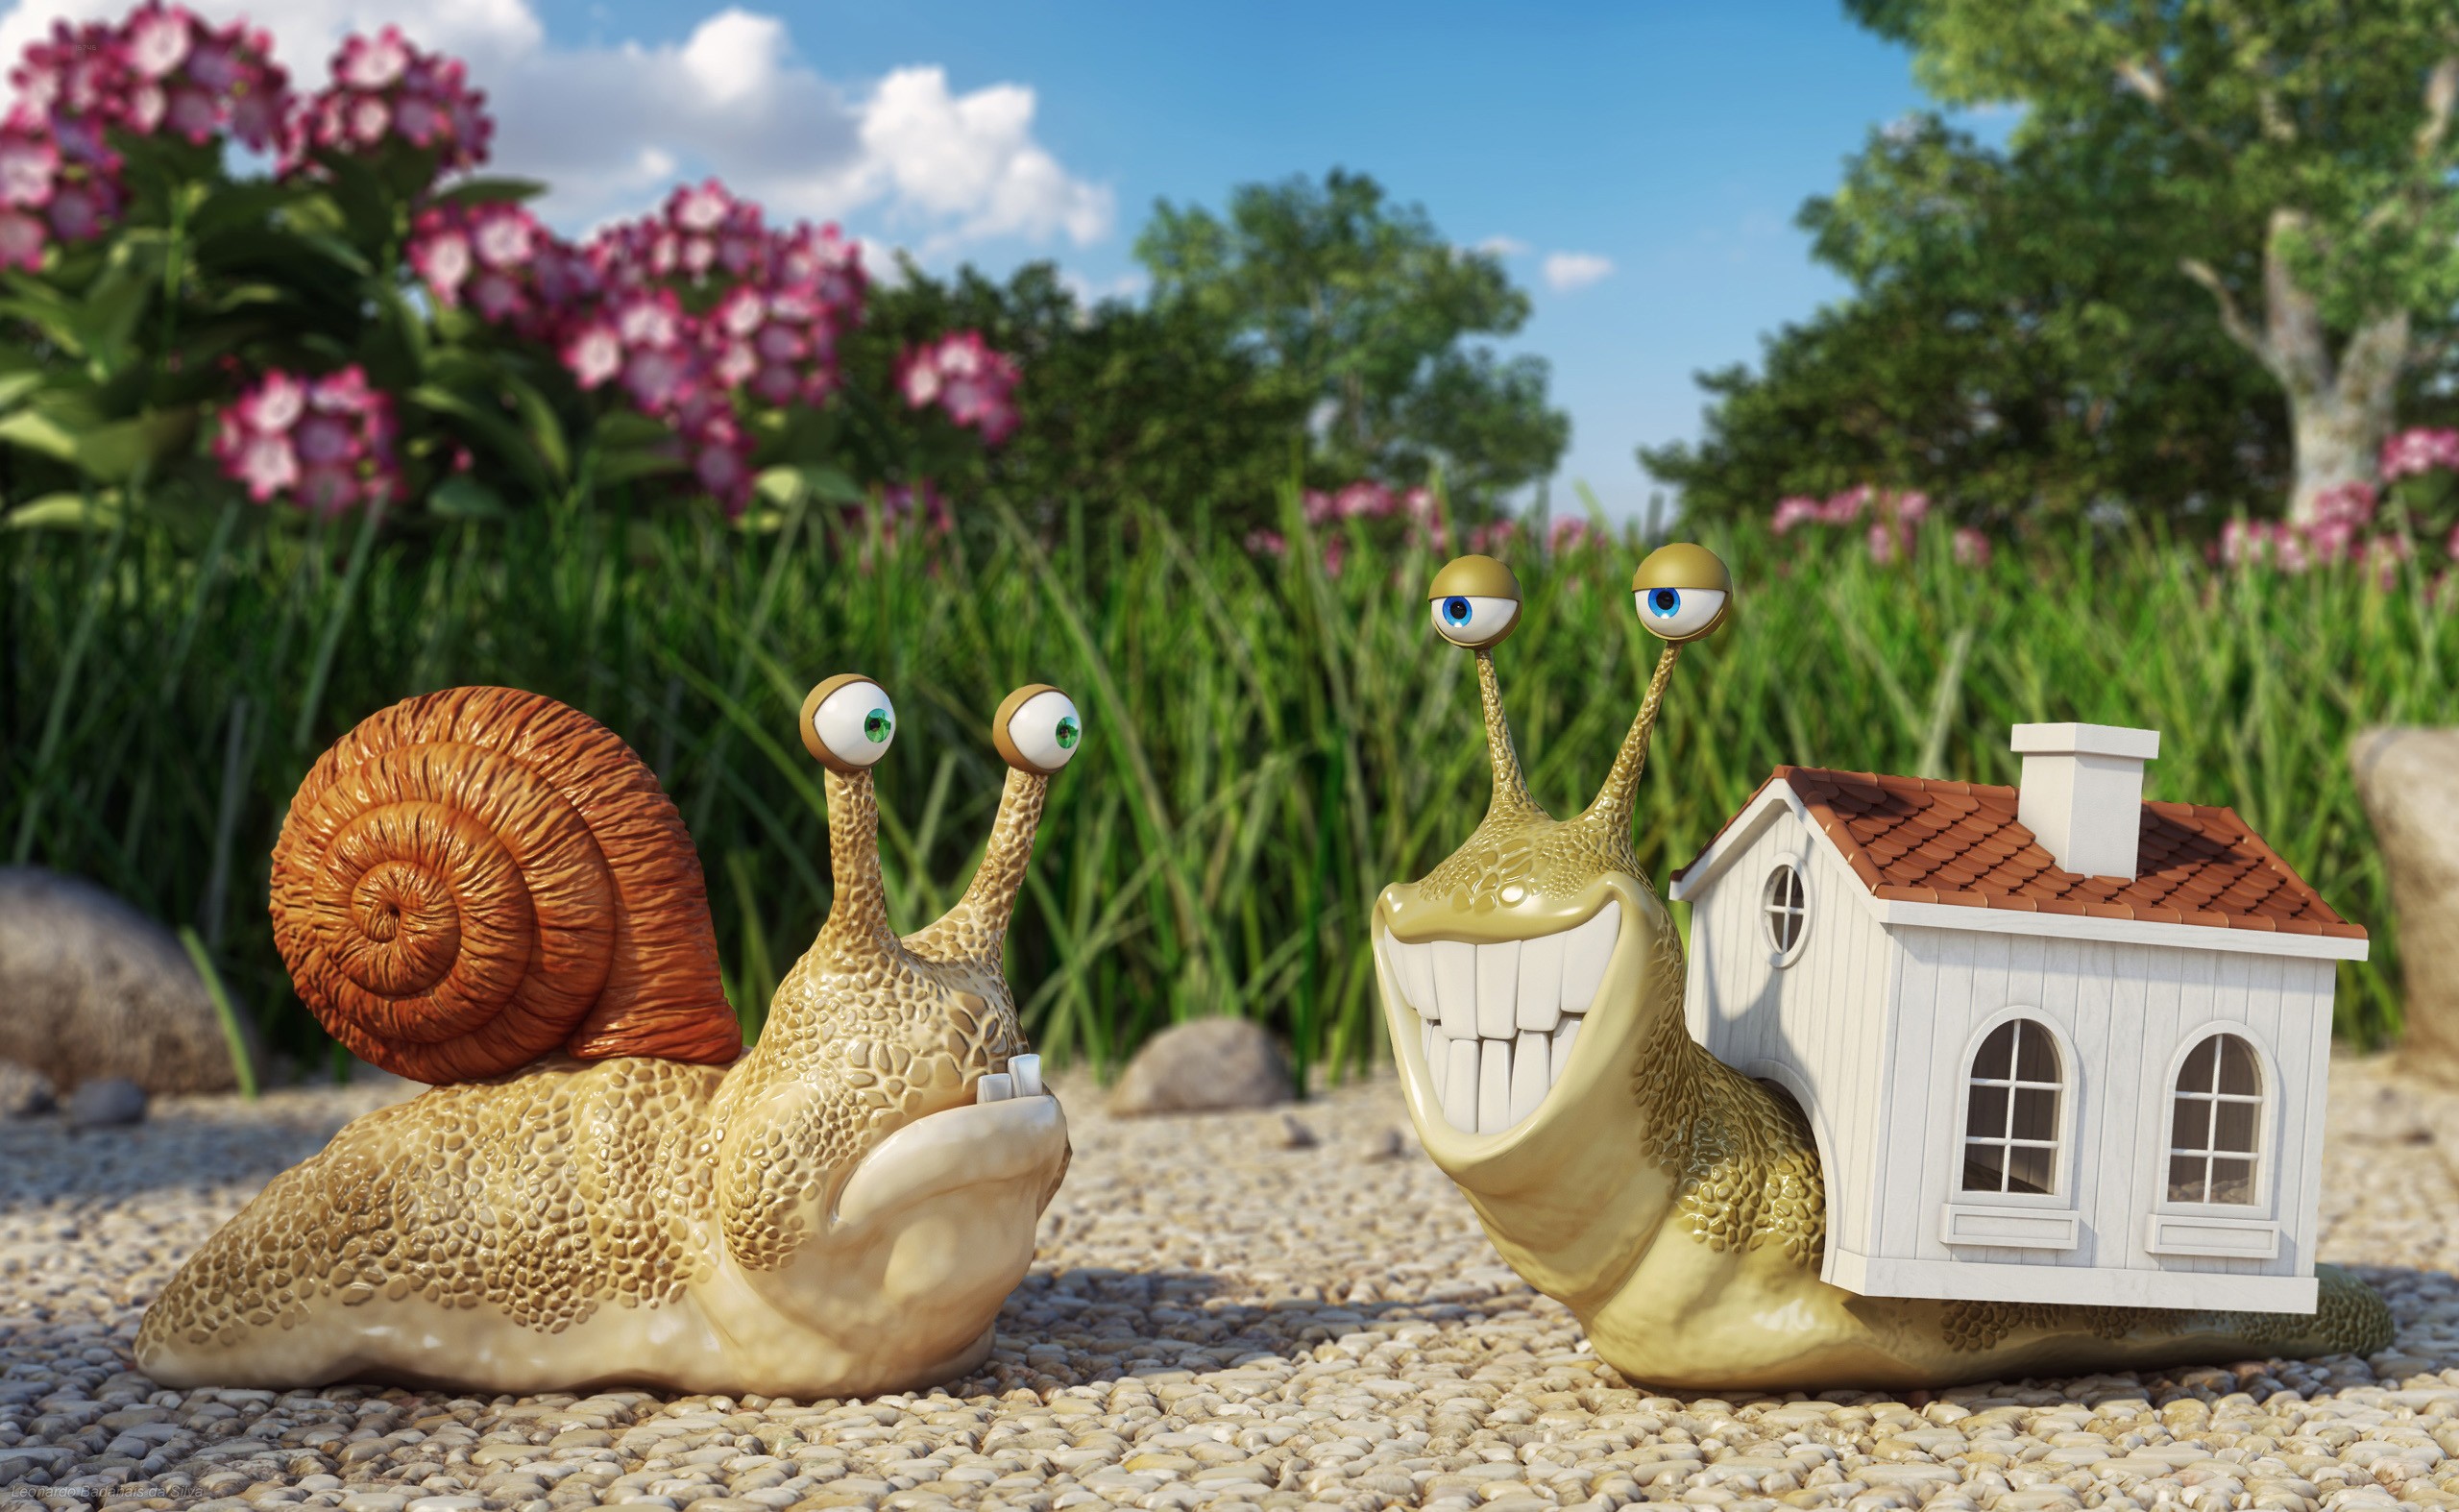 General 2560x1574 snail artwork CGI humor digital art